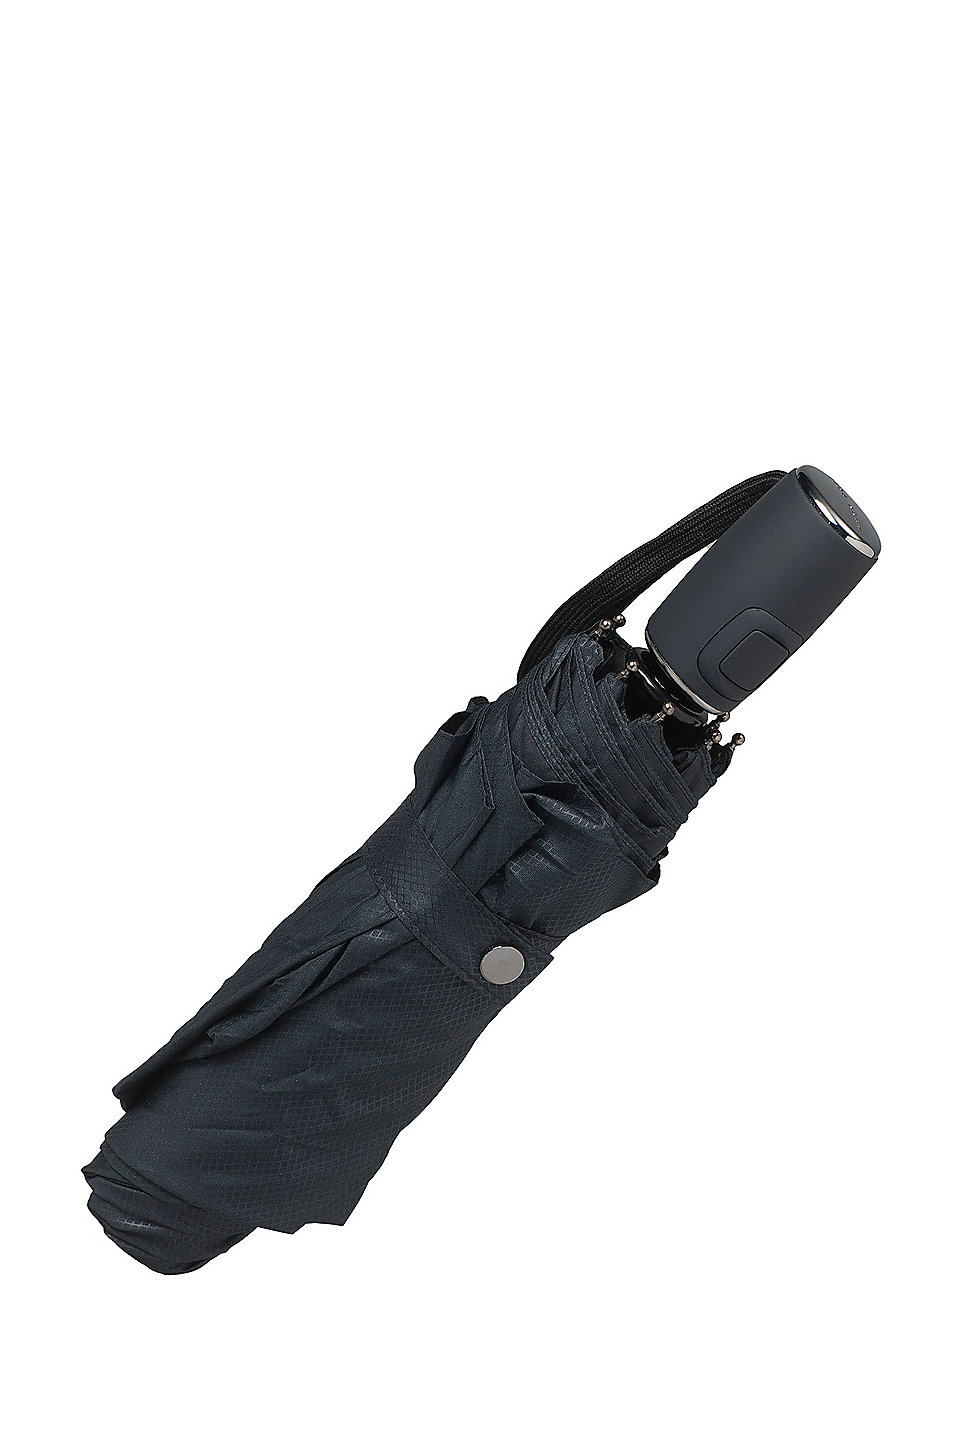 systematisch mout Mentaliteit BOSS - Aluminum Frame Patterned Pocket Umbrella | Umbrella New Loop Dark